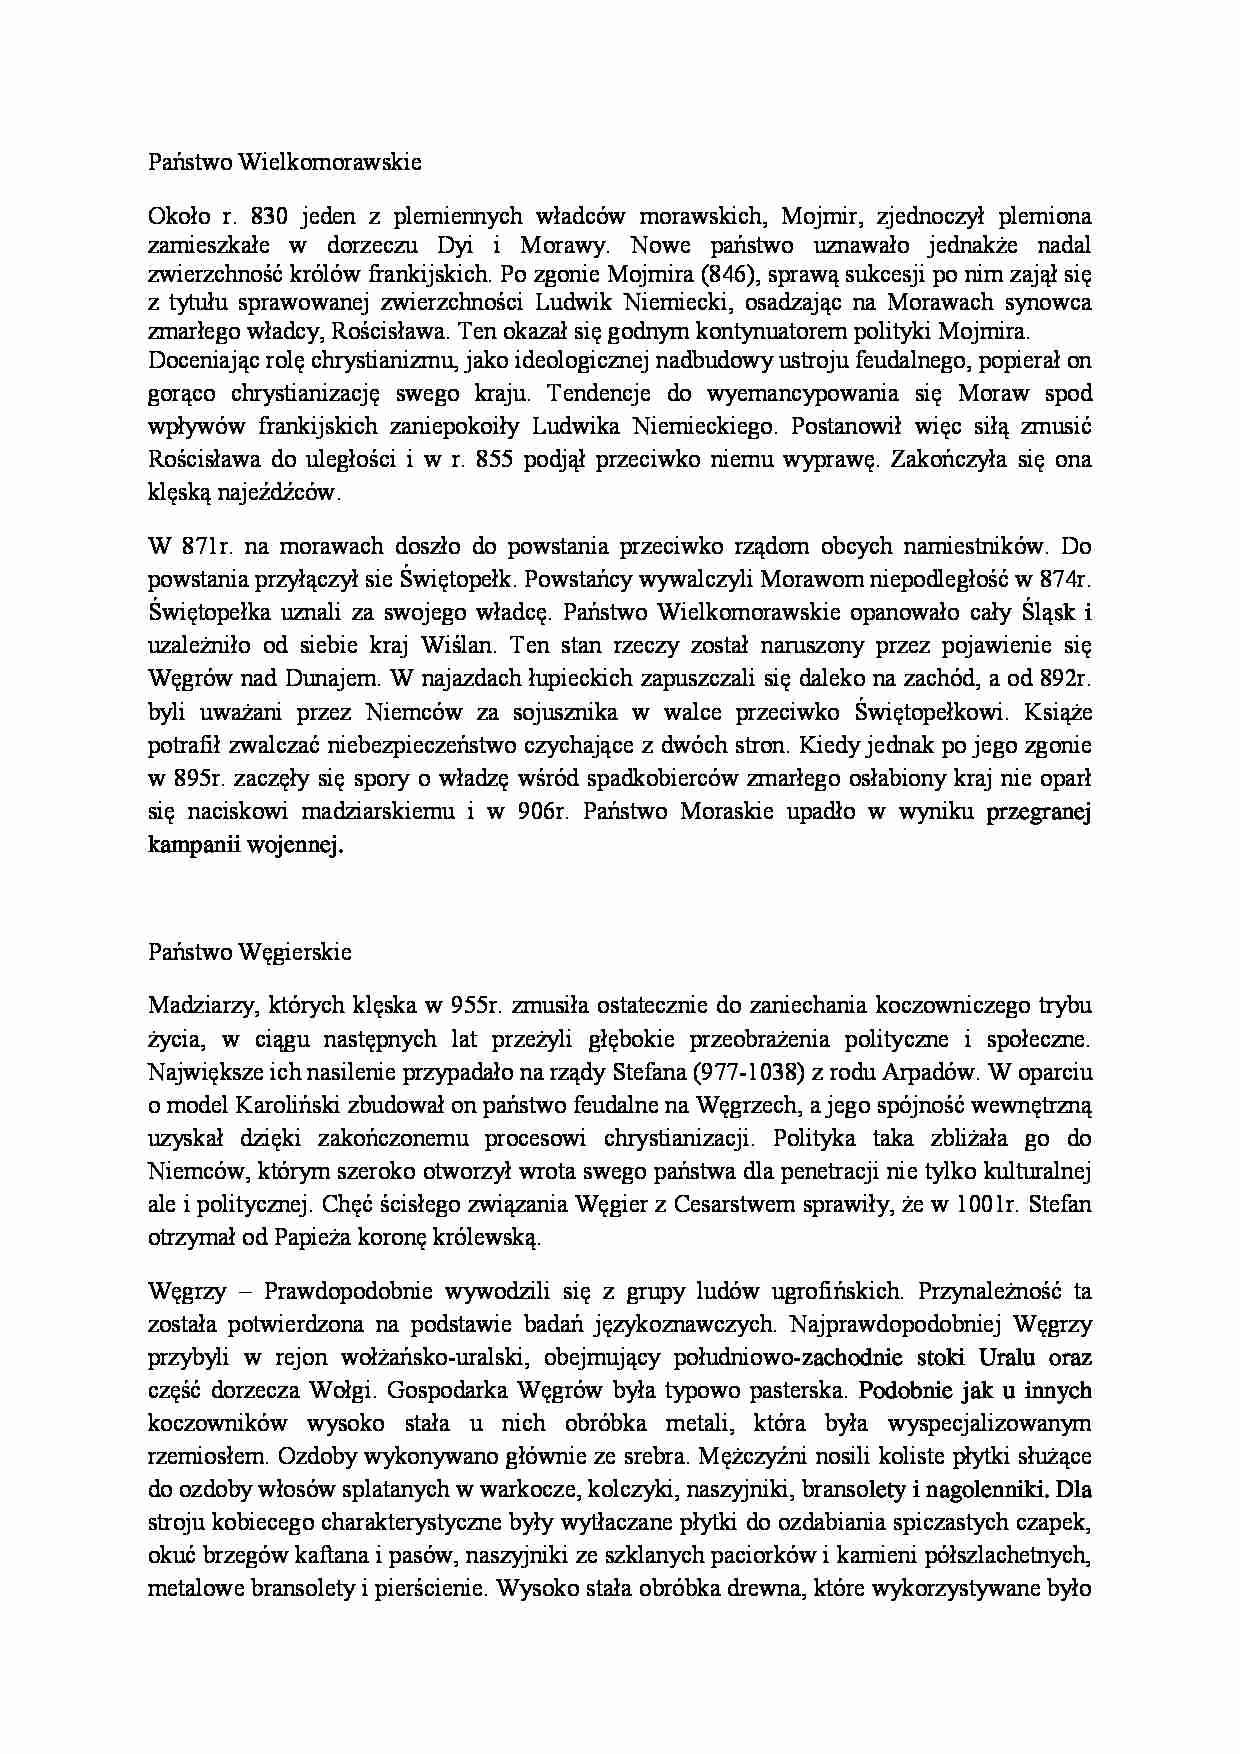 Państwo wielkomorawskie i węgierskie-opracowanie - strona 1